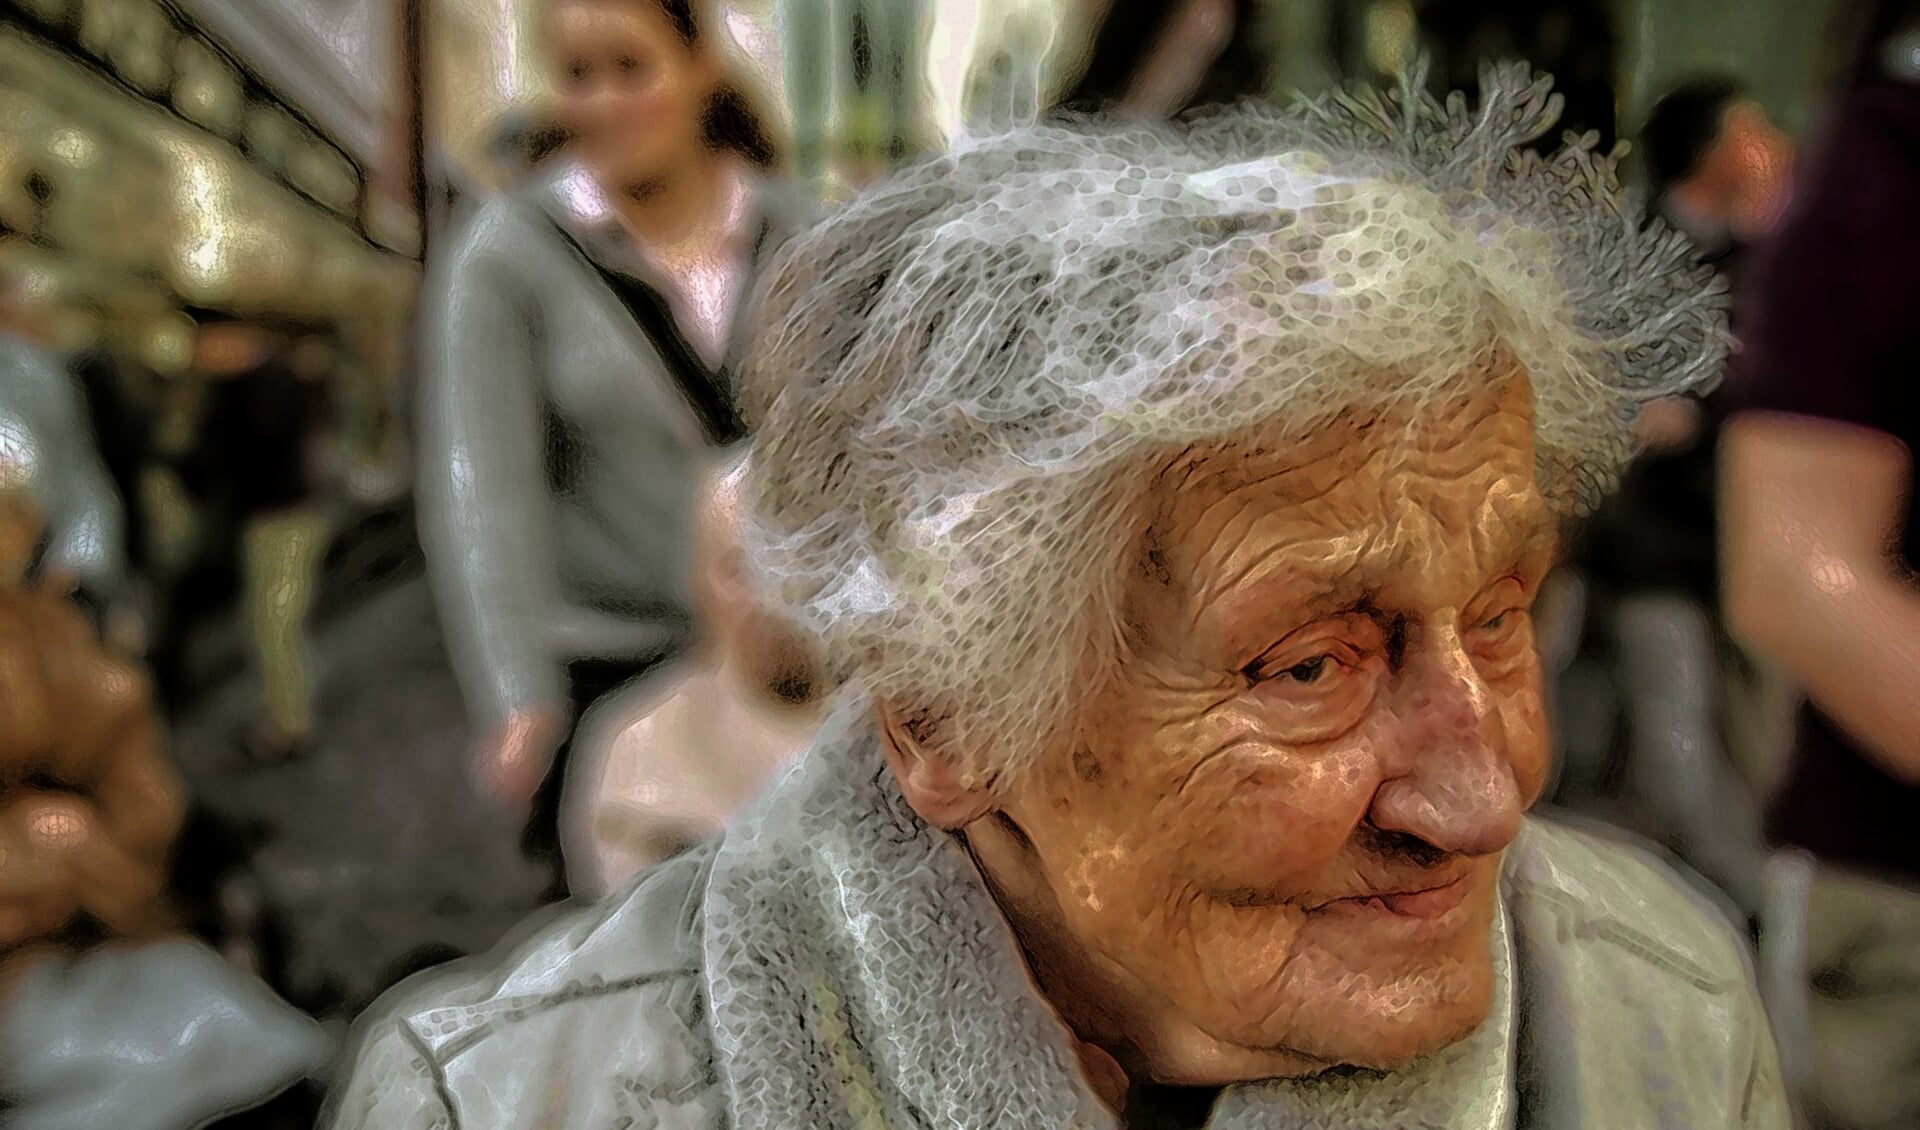 Leren hoe je dementie herkent in de openbare ruimtes.